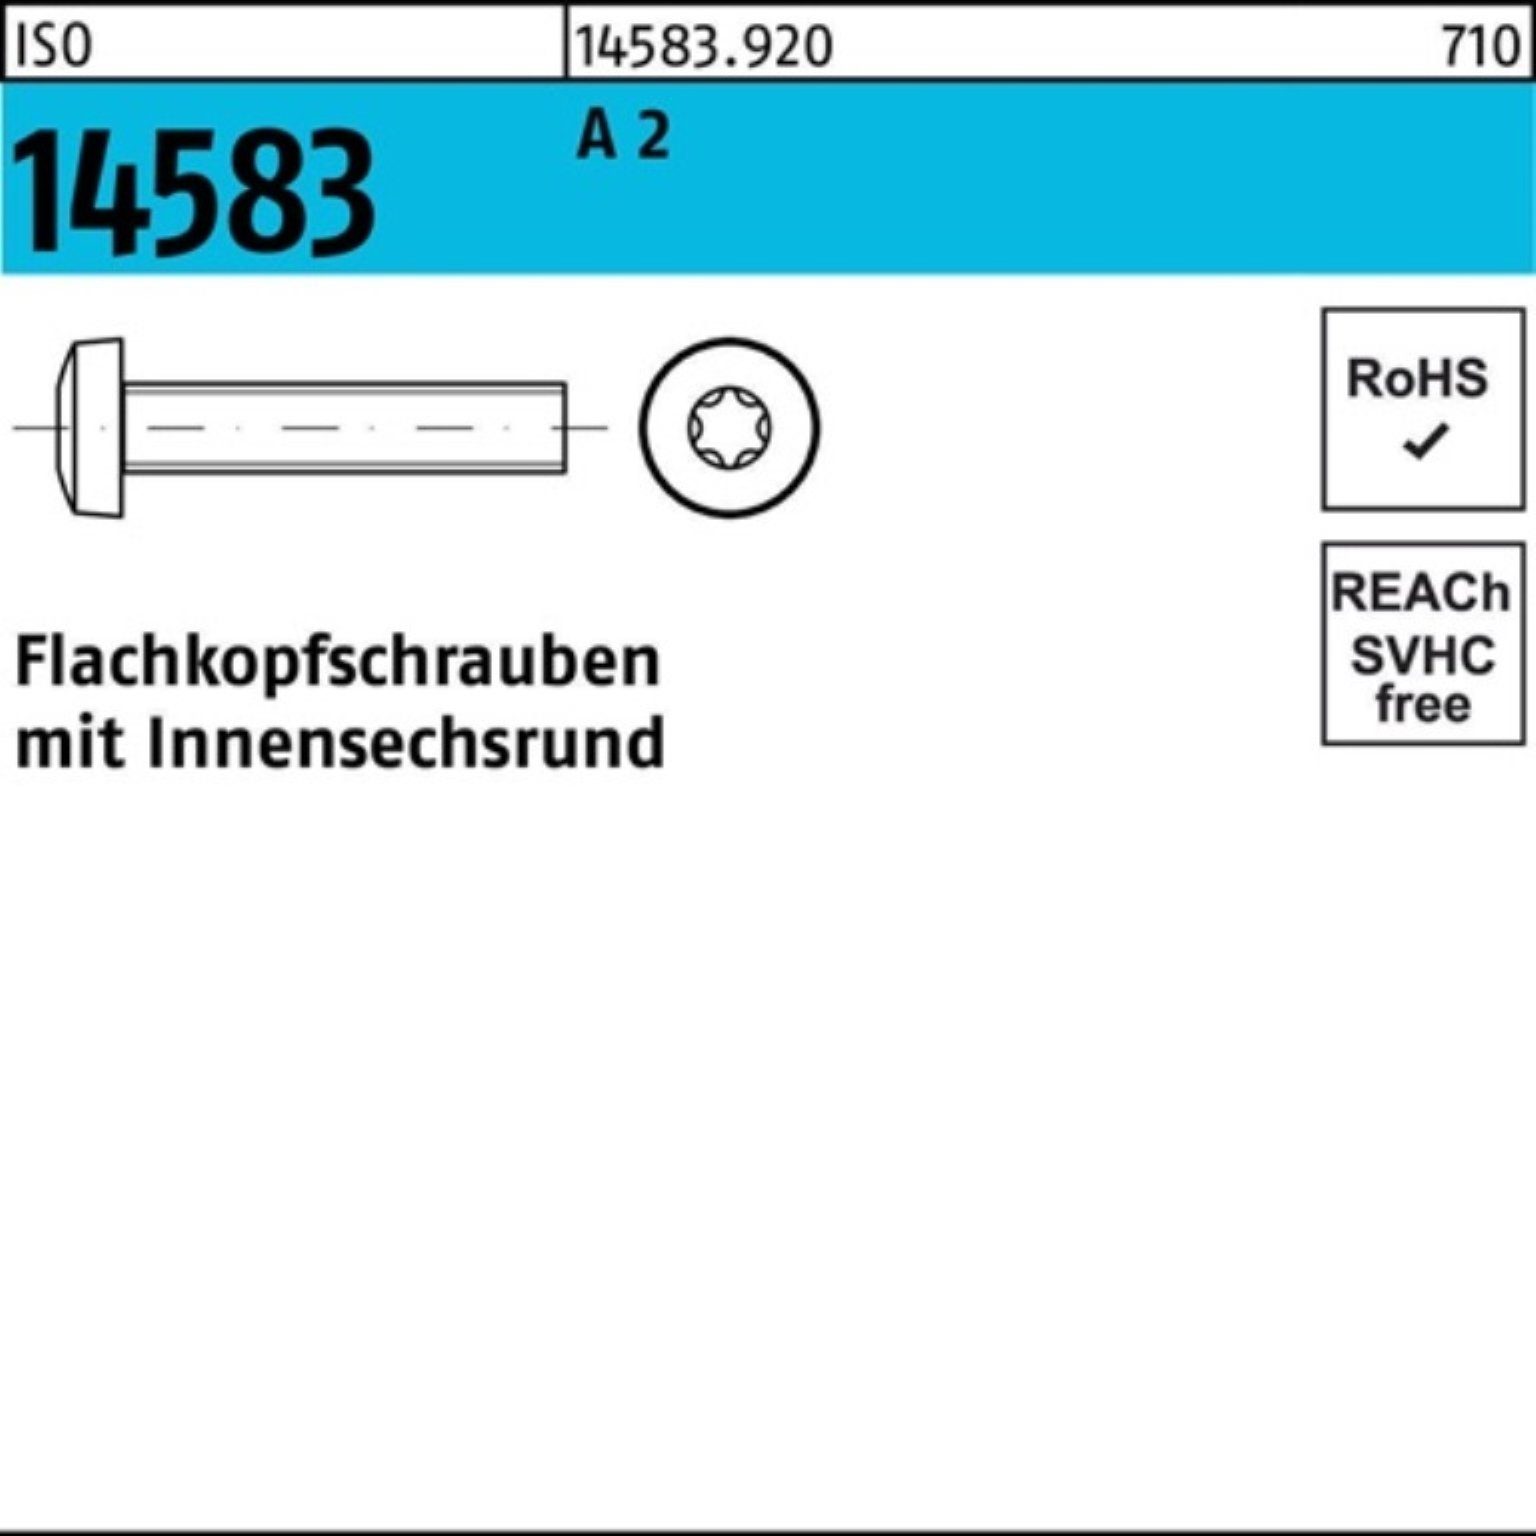 ISO Flachkopfschraube 1000 Reyher Stück Pack 6 A Schraube 14583 1000er ISR 2 M4x ISO